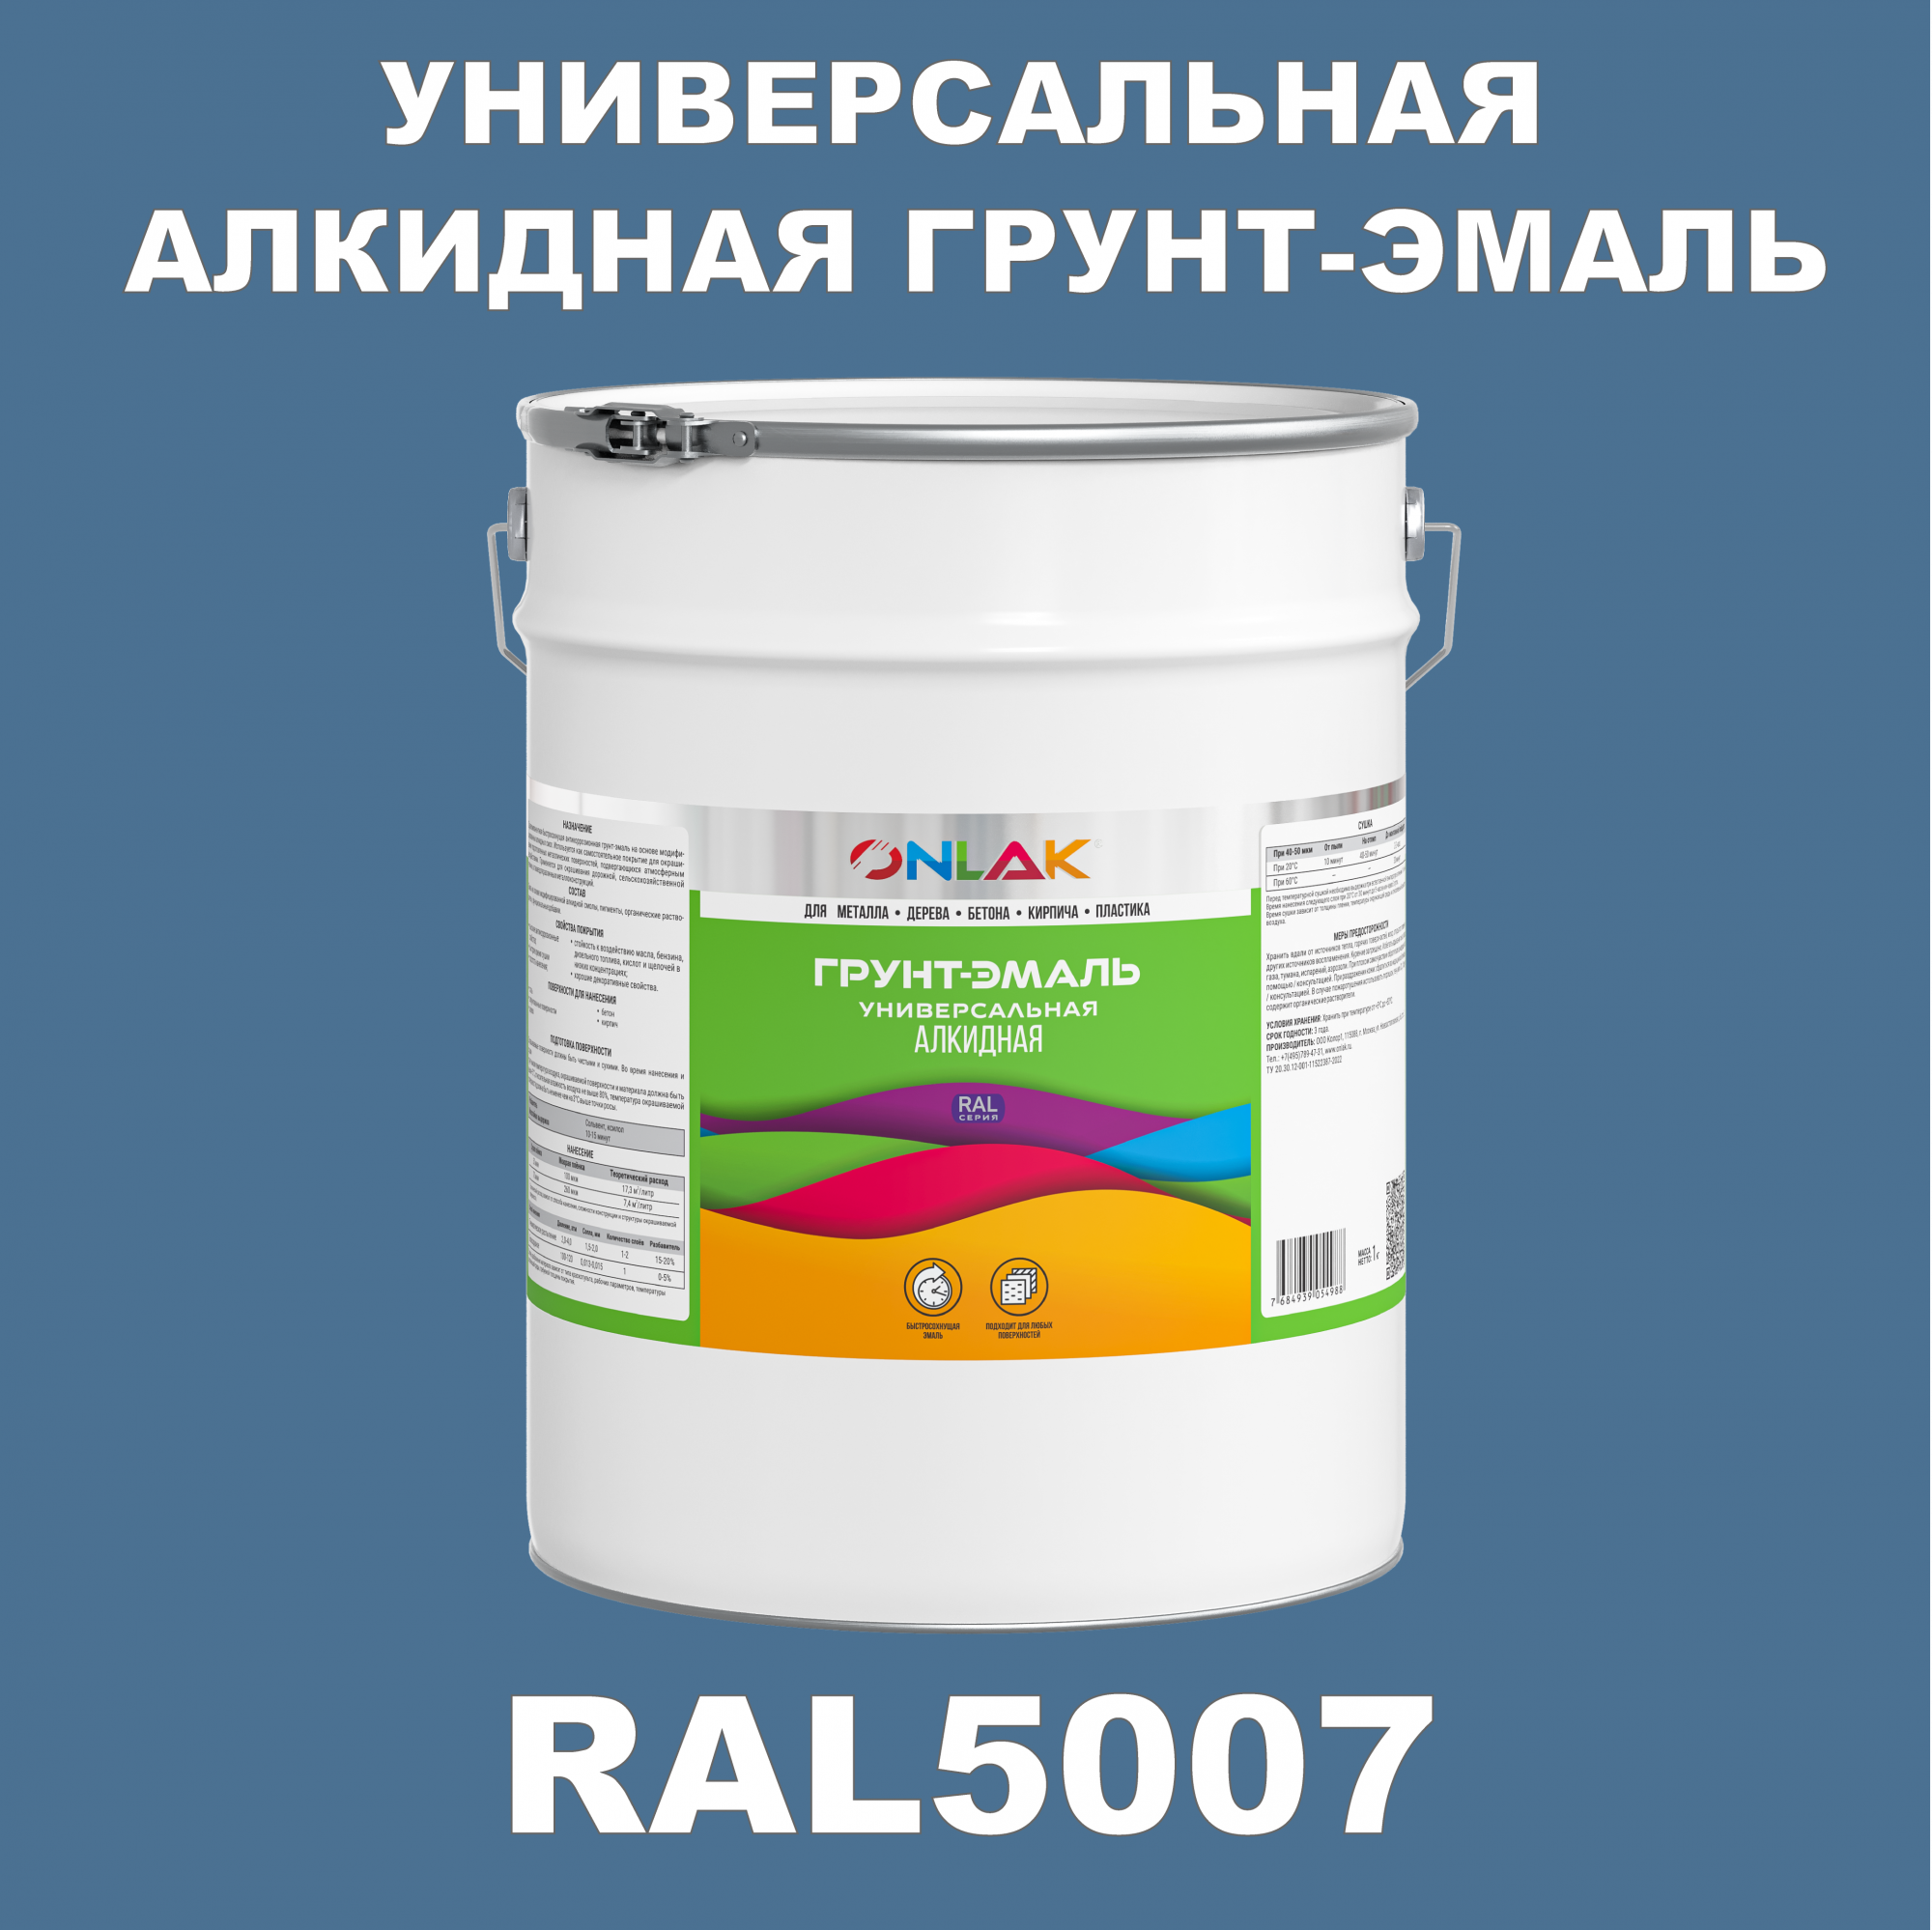 Грунт-эмаль ONLAK 1К RAL5007 антикоррозионная алкидная по металлу по ржавчине 20 кг грунт эмаль рас по ржавчине алкидная синяя 0 9 кг